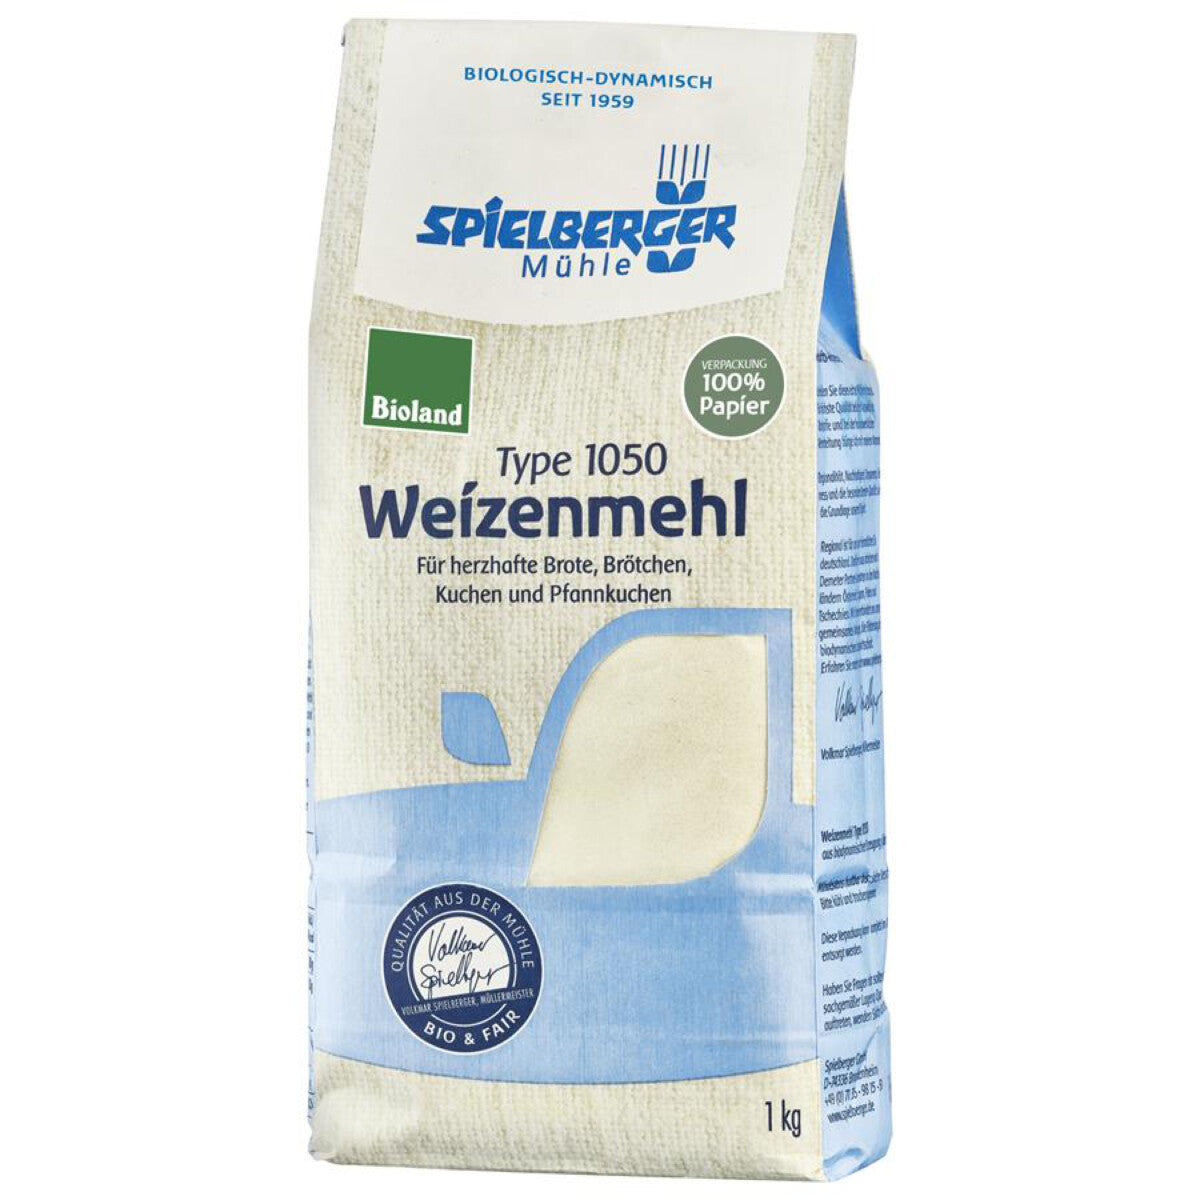 SPIELBERGER MÜHLE Weizenmehl Type 1050 - 1 kg